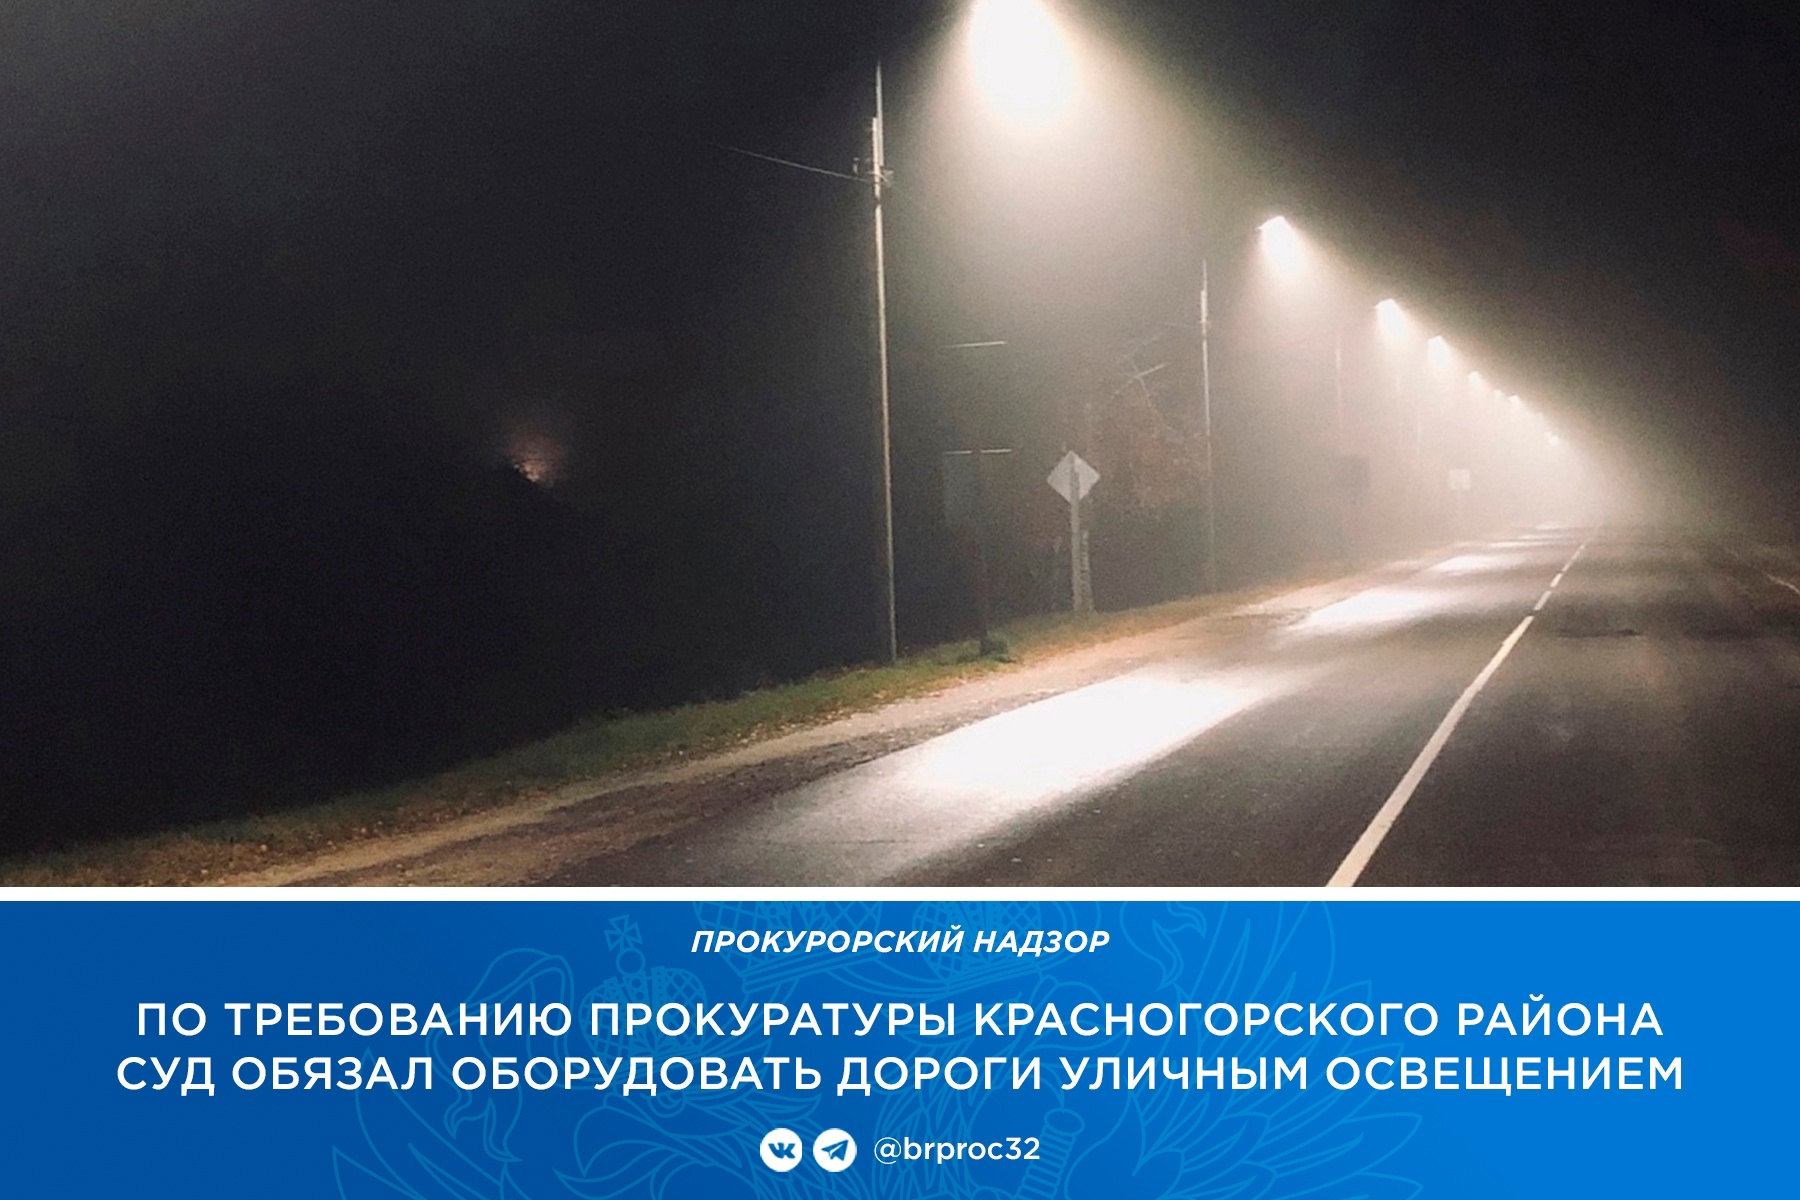 Суд обязал администрацию Красногорского района осветить дороги